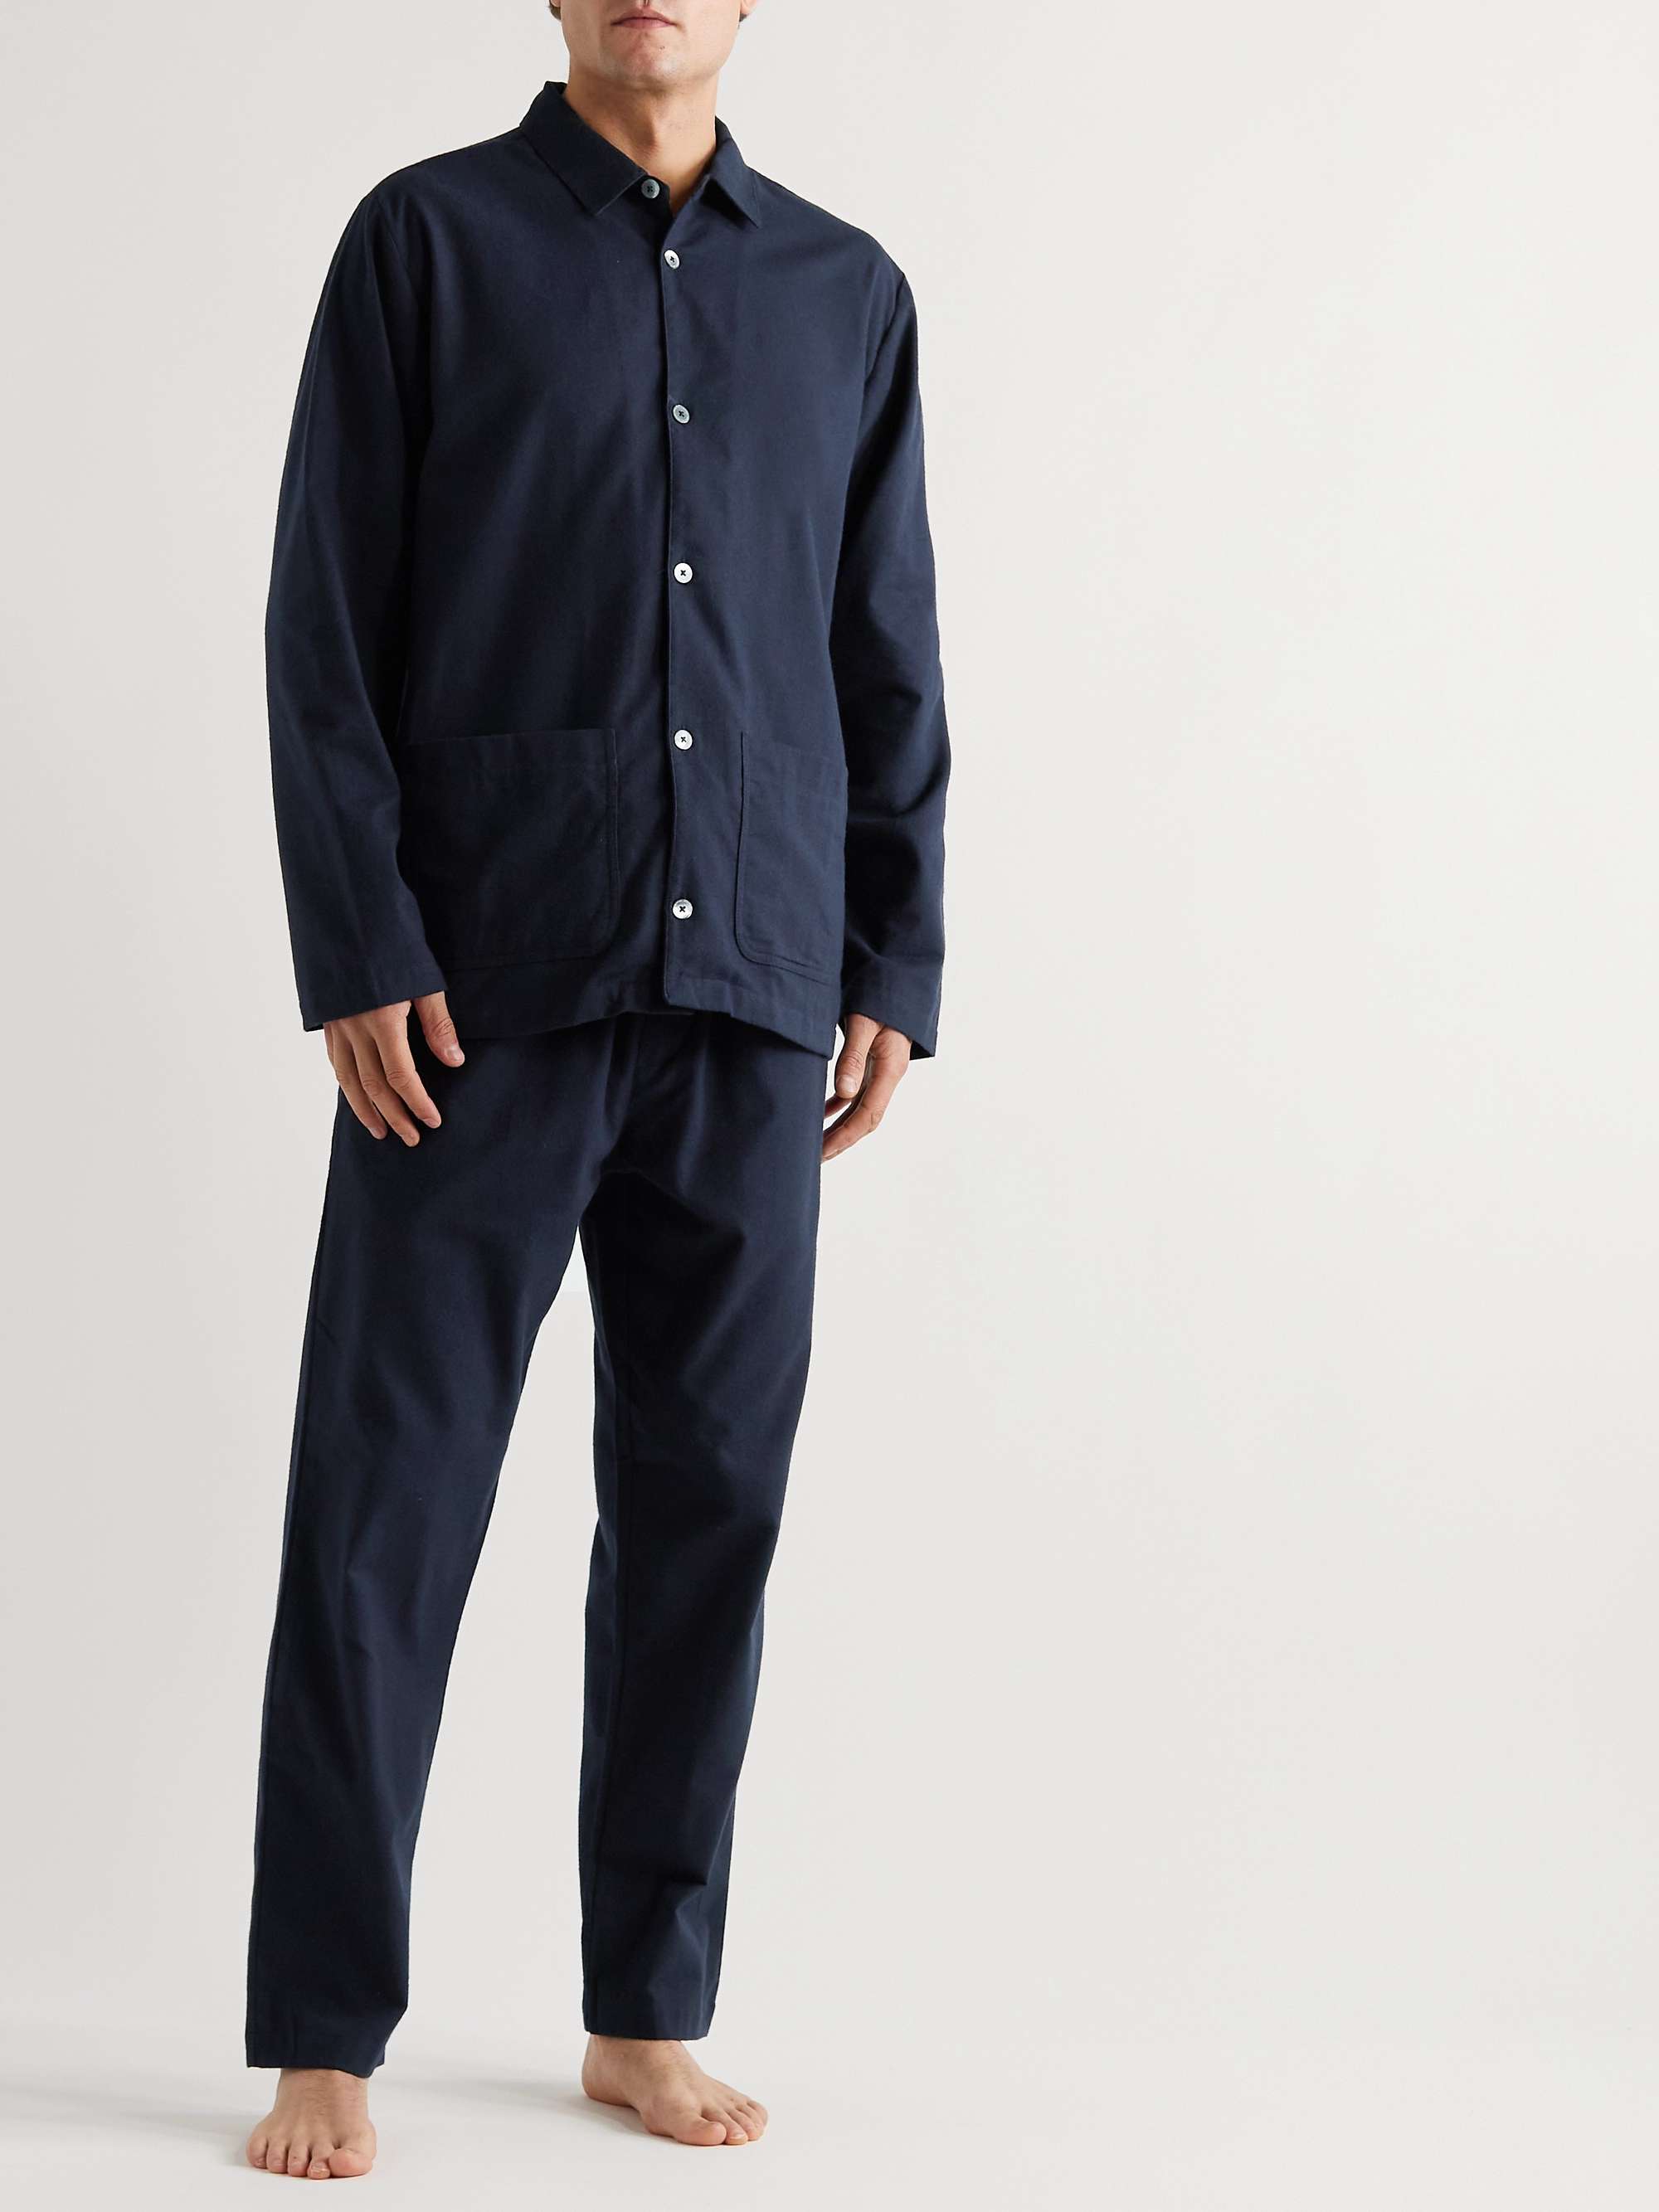 DESMOND & DEMPSEY Brushed Cotton-Flannel Pyjama Set for Men | MR PORTER